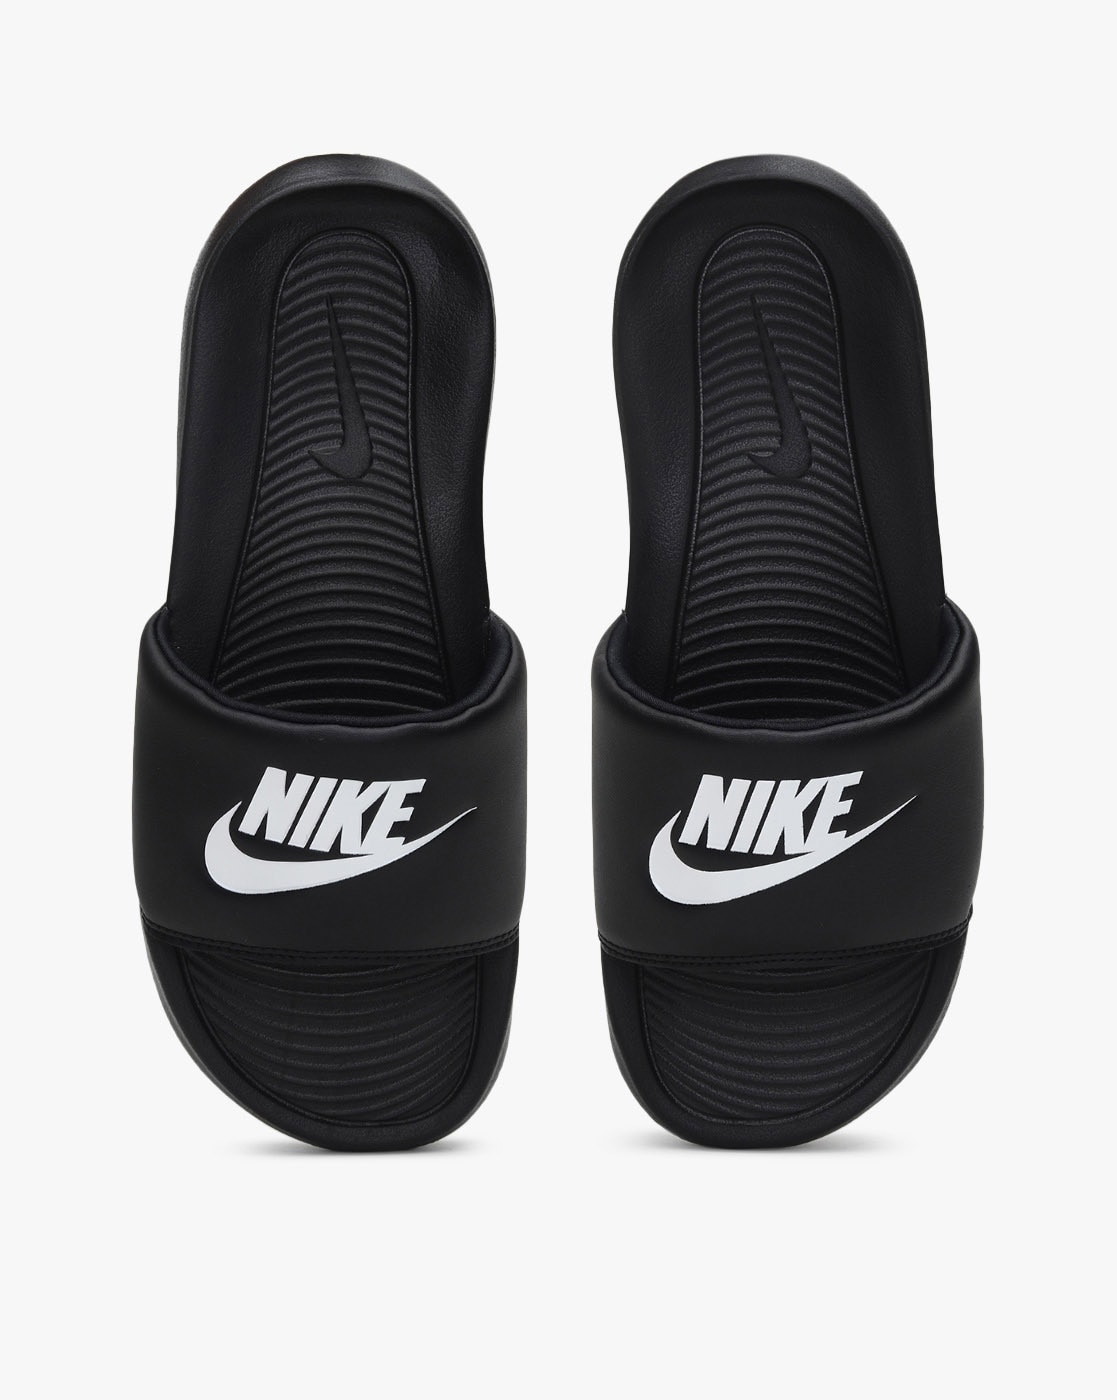 Amazon.in: Nike - Men's Flip-Flops & Slippers / Men's Shoes: Shoes &  Handbags-thanhphatduhoc.com.vn